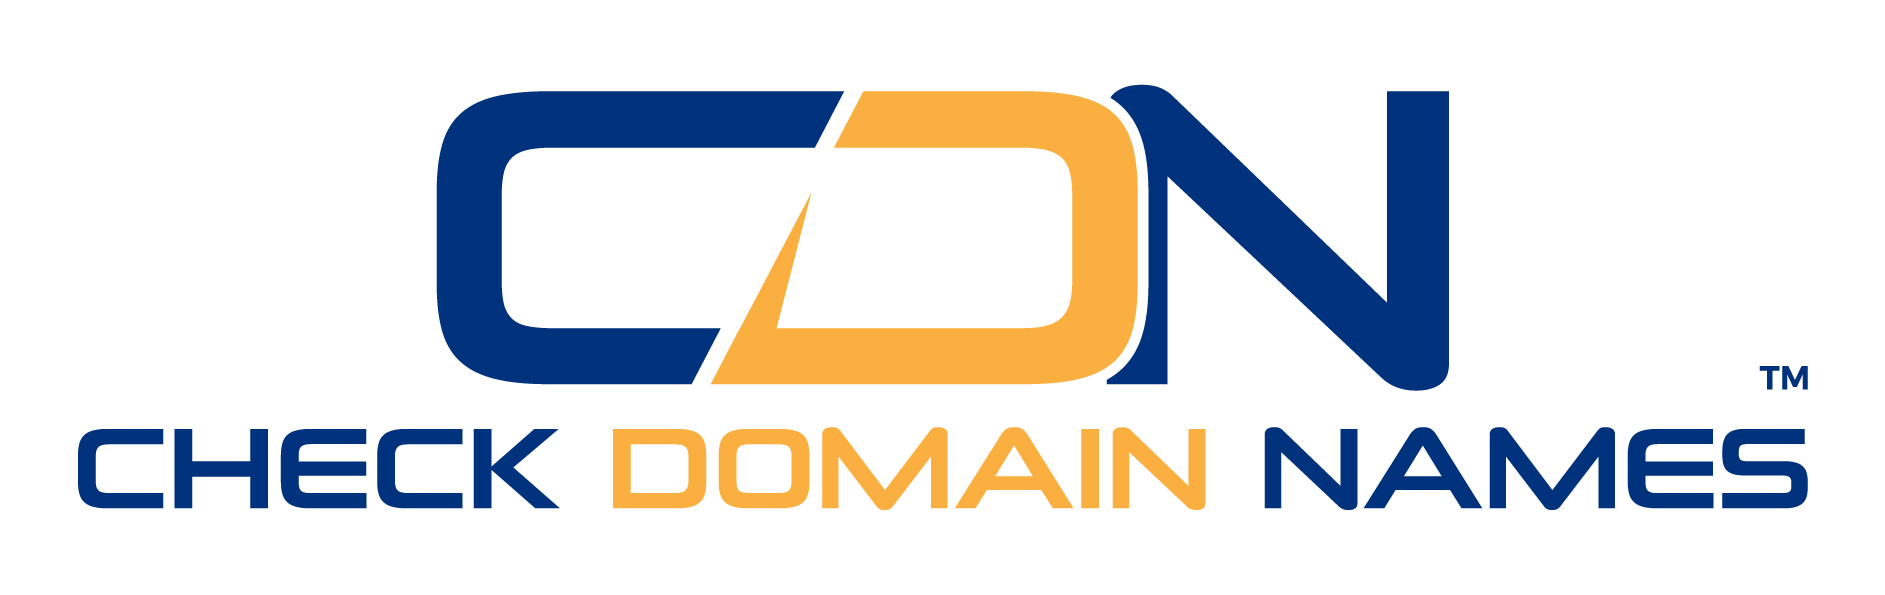 Check Domain Names